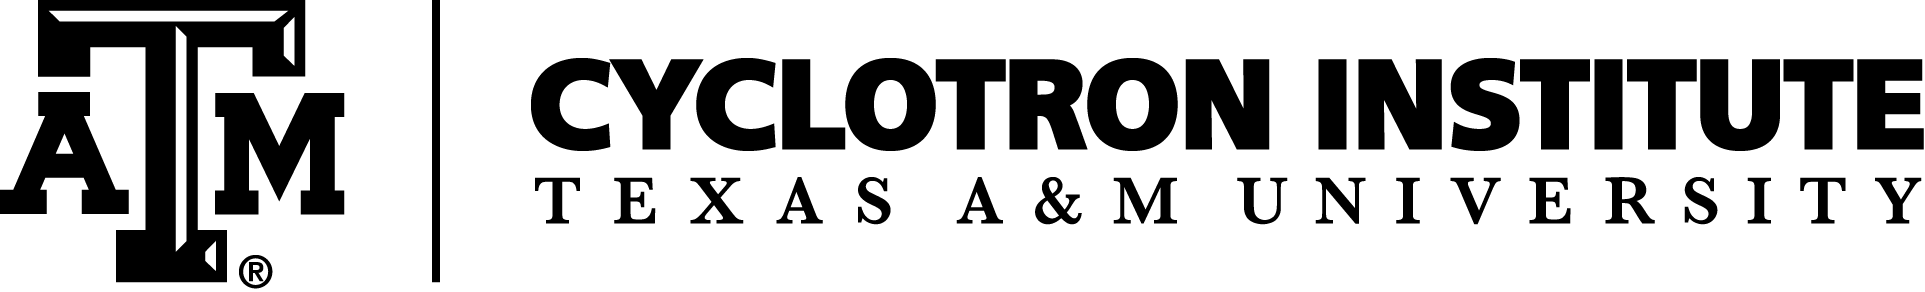 cyclotron logo black